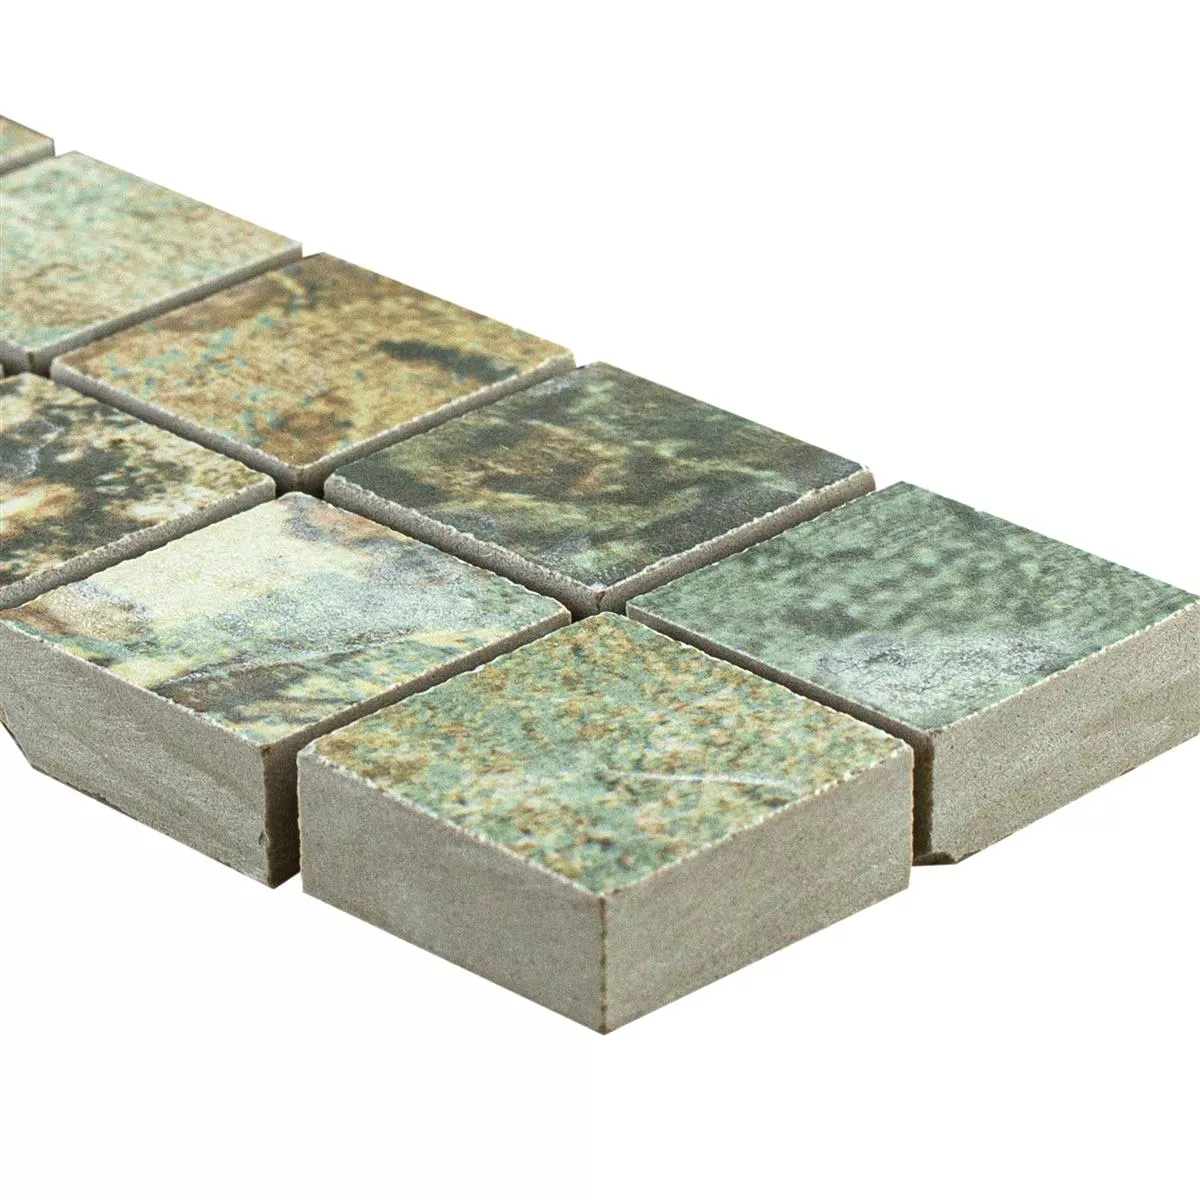 Kameniny S Porcelánovou Povrchovou Úpravou Dlaždice Bordury Helena 25x25mm